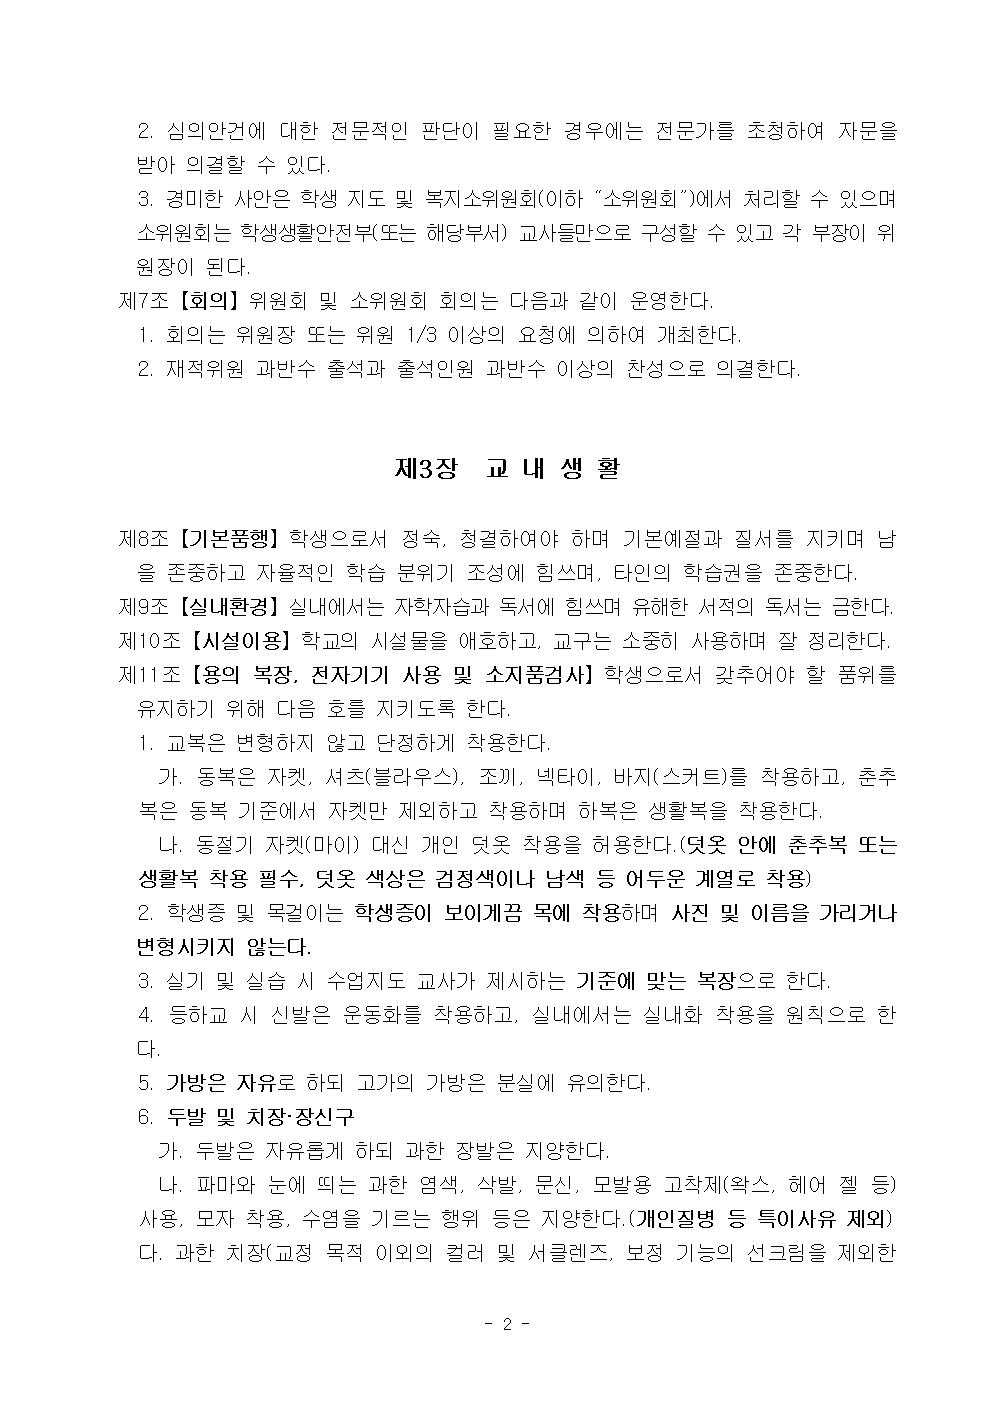 2022학년도 광혜원중학교 학생생활규정003